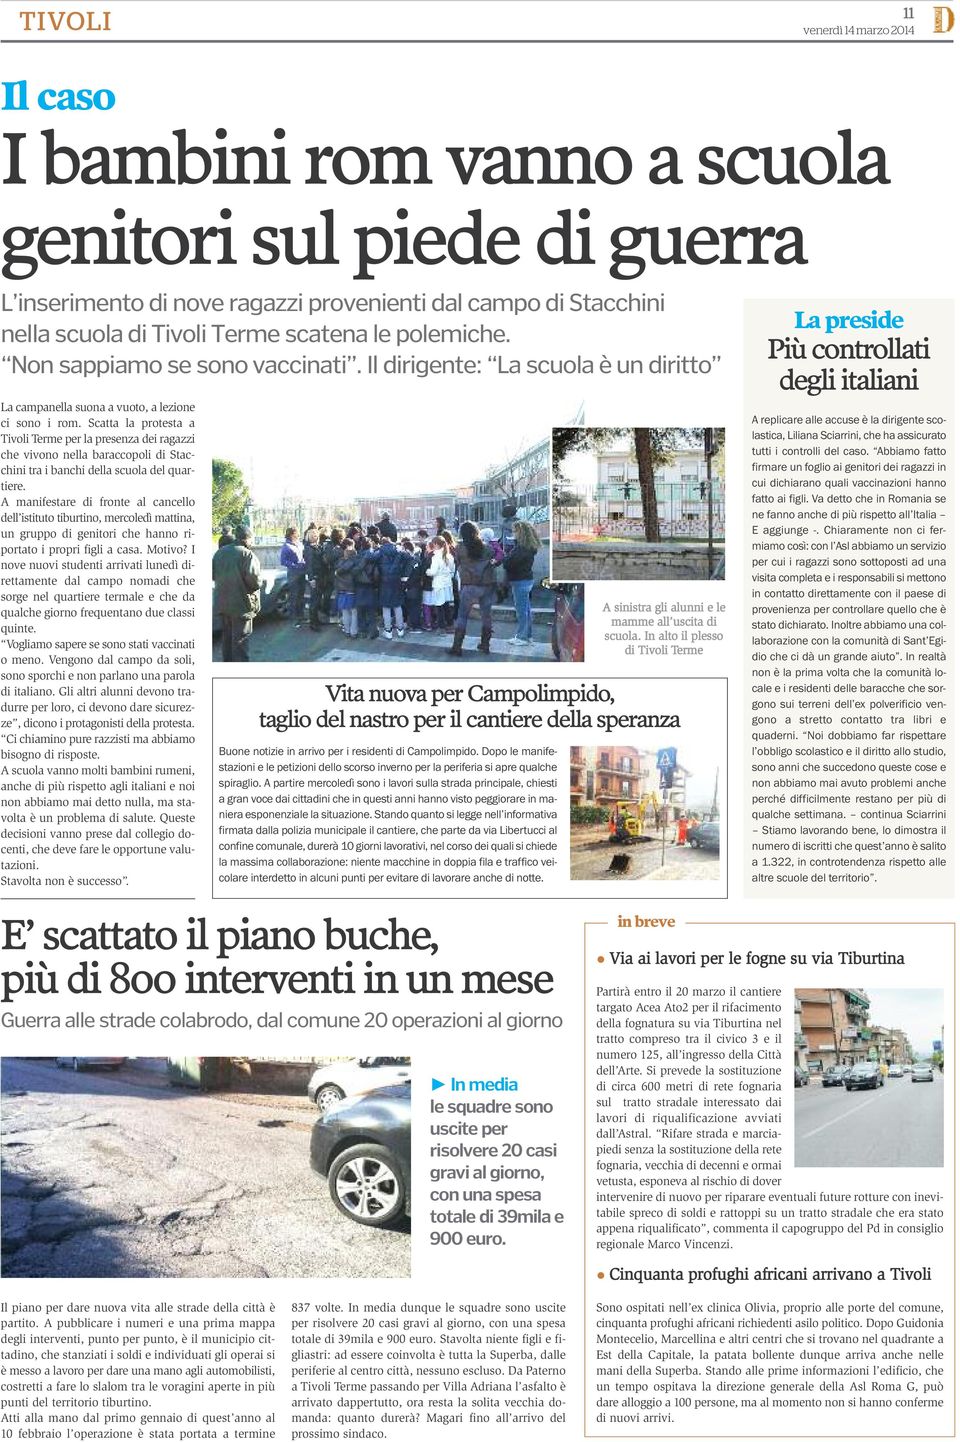 Scatta la protesta a Tivoli Terme per la presenza dei ragazzi che vivono nella baraccopoli di Stacchini tra i banchi della scuola del quartiere.